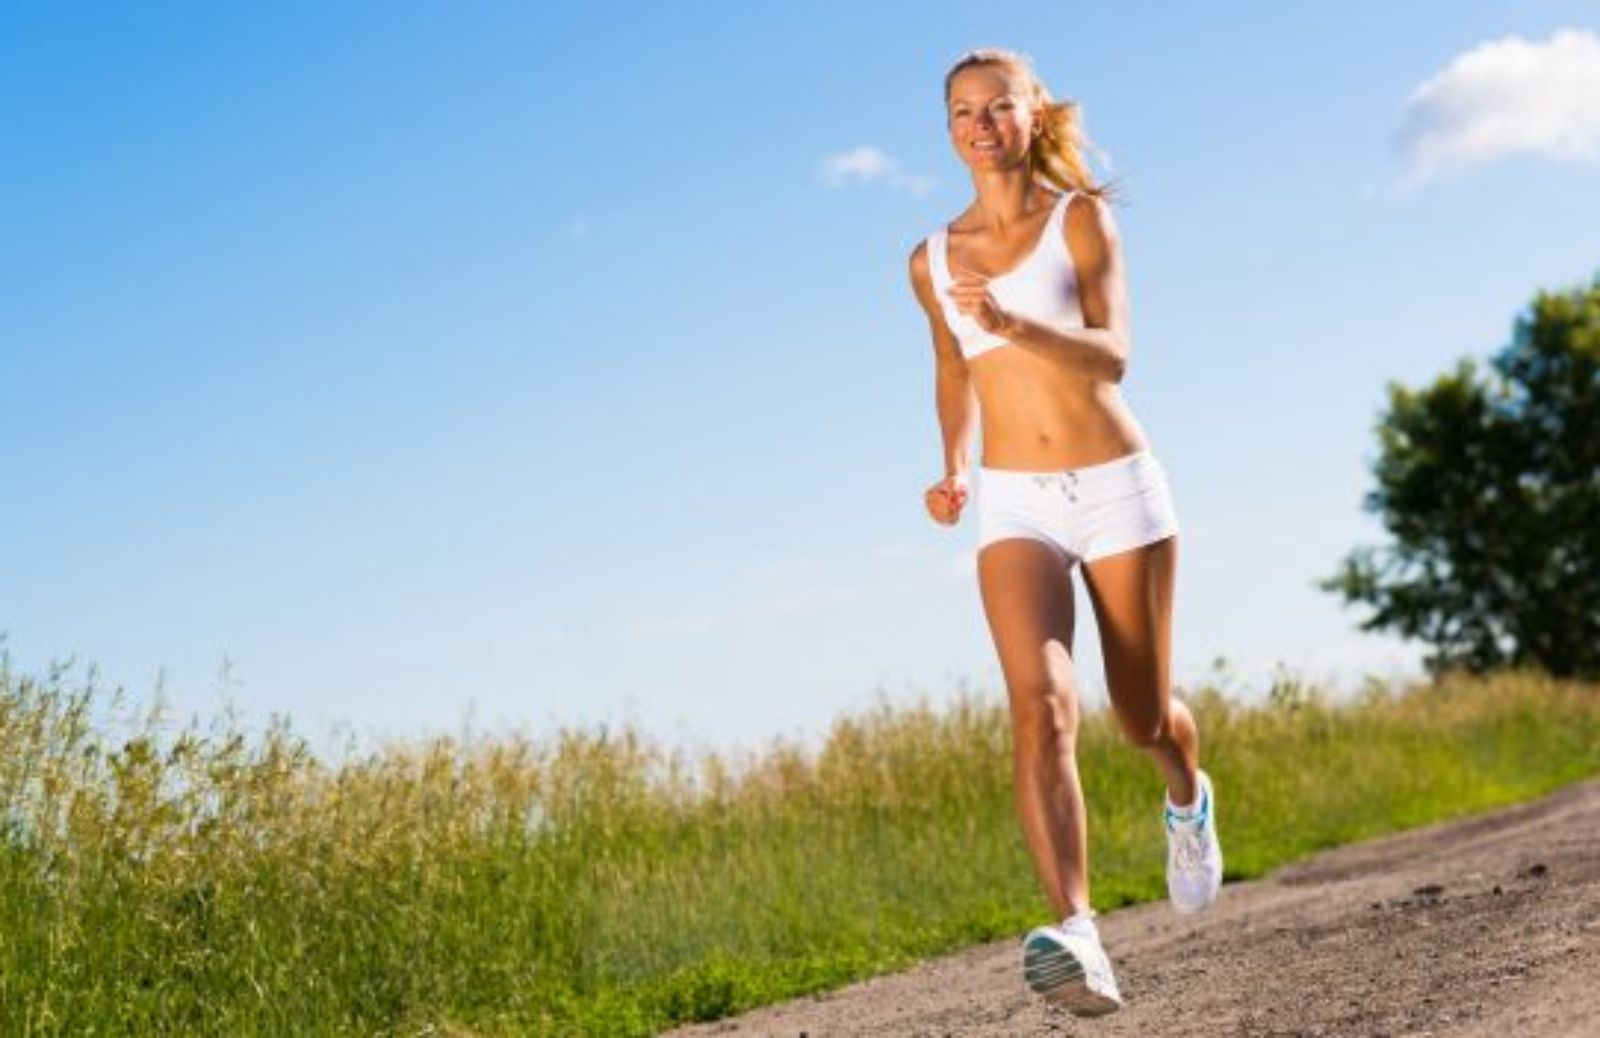 Come correre meglio con gli esercizi giusti